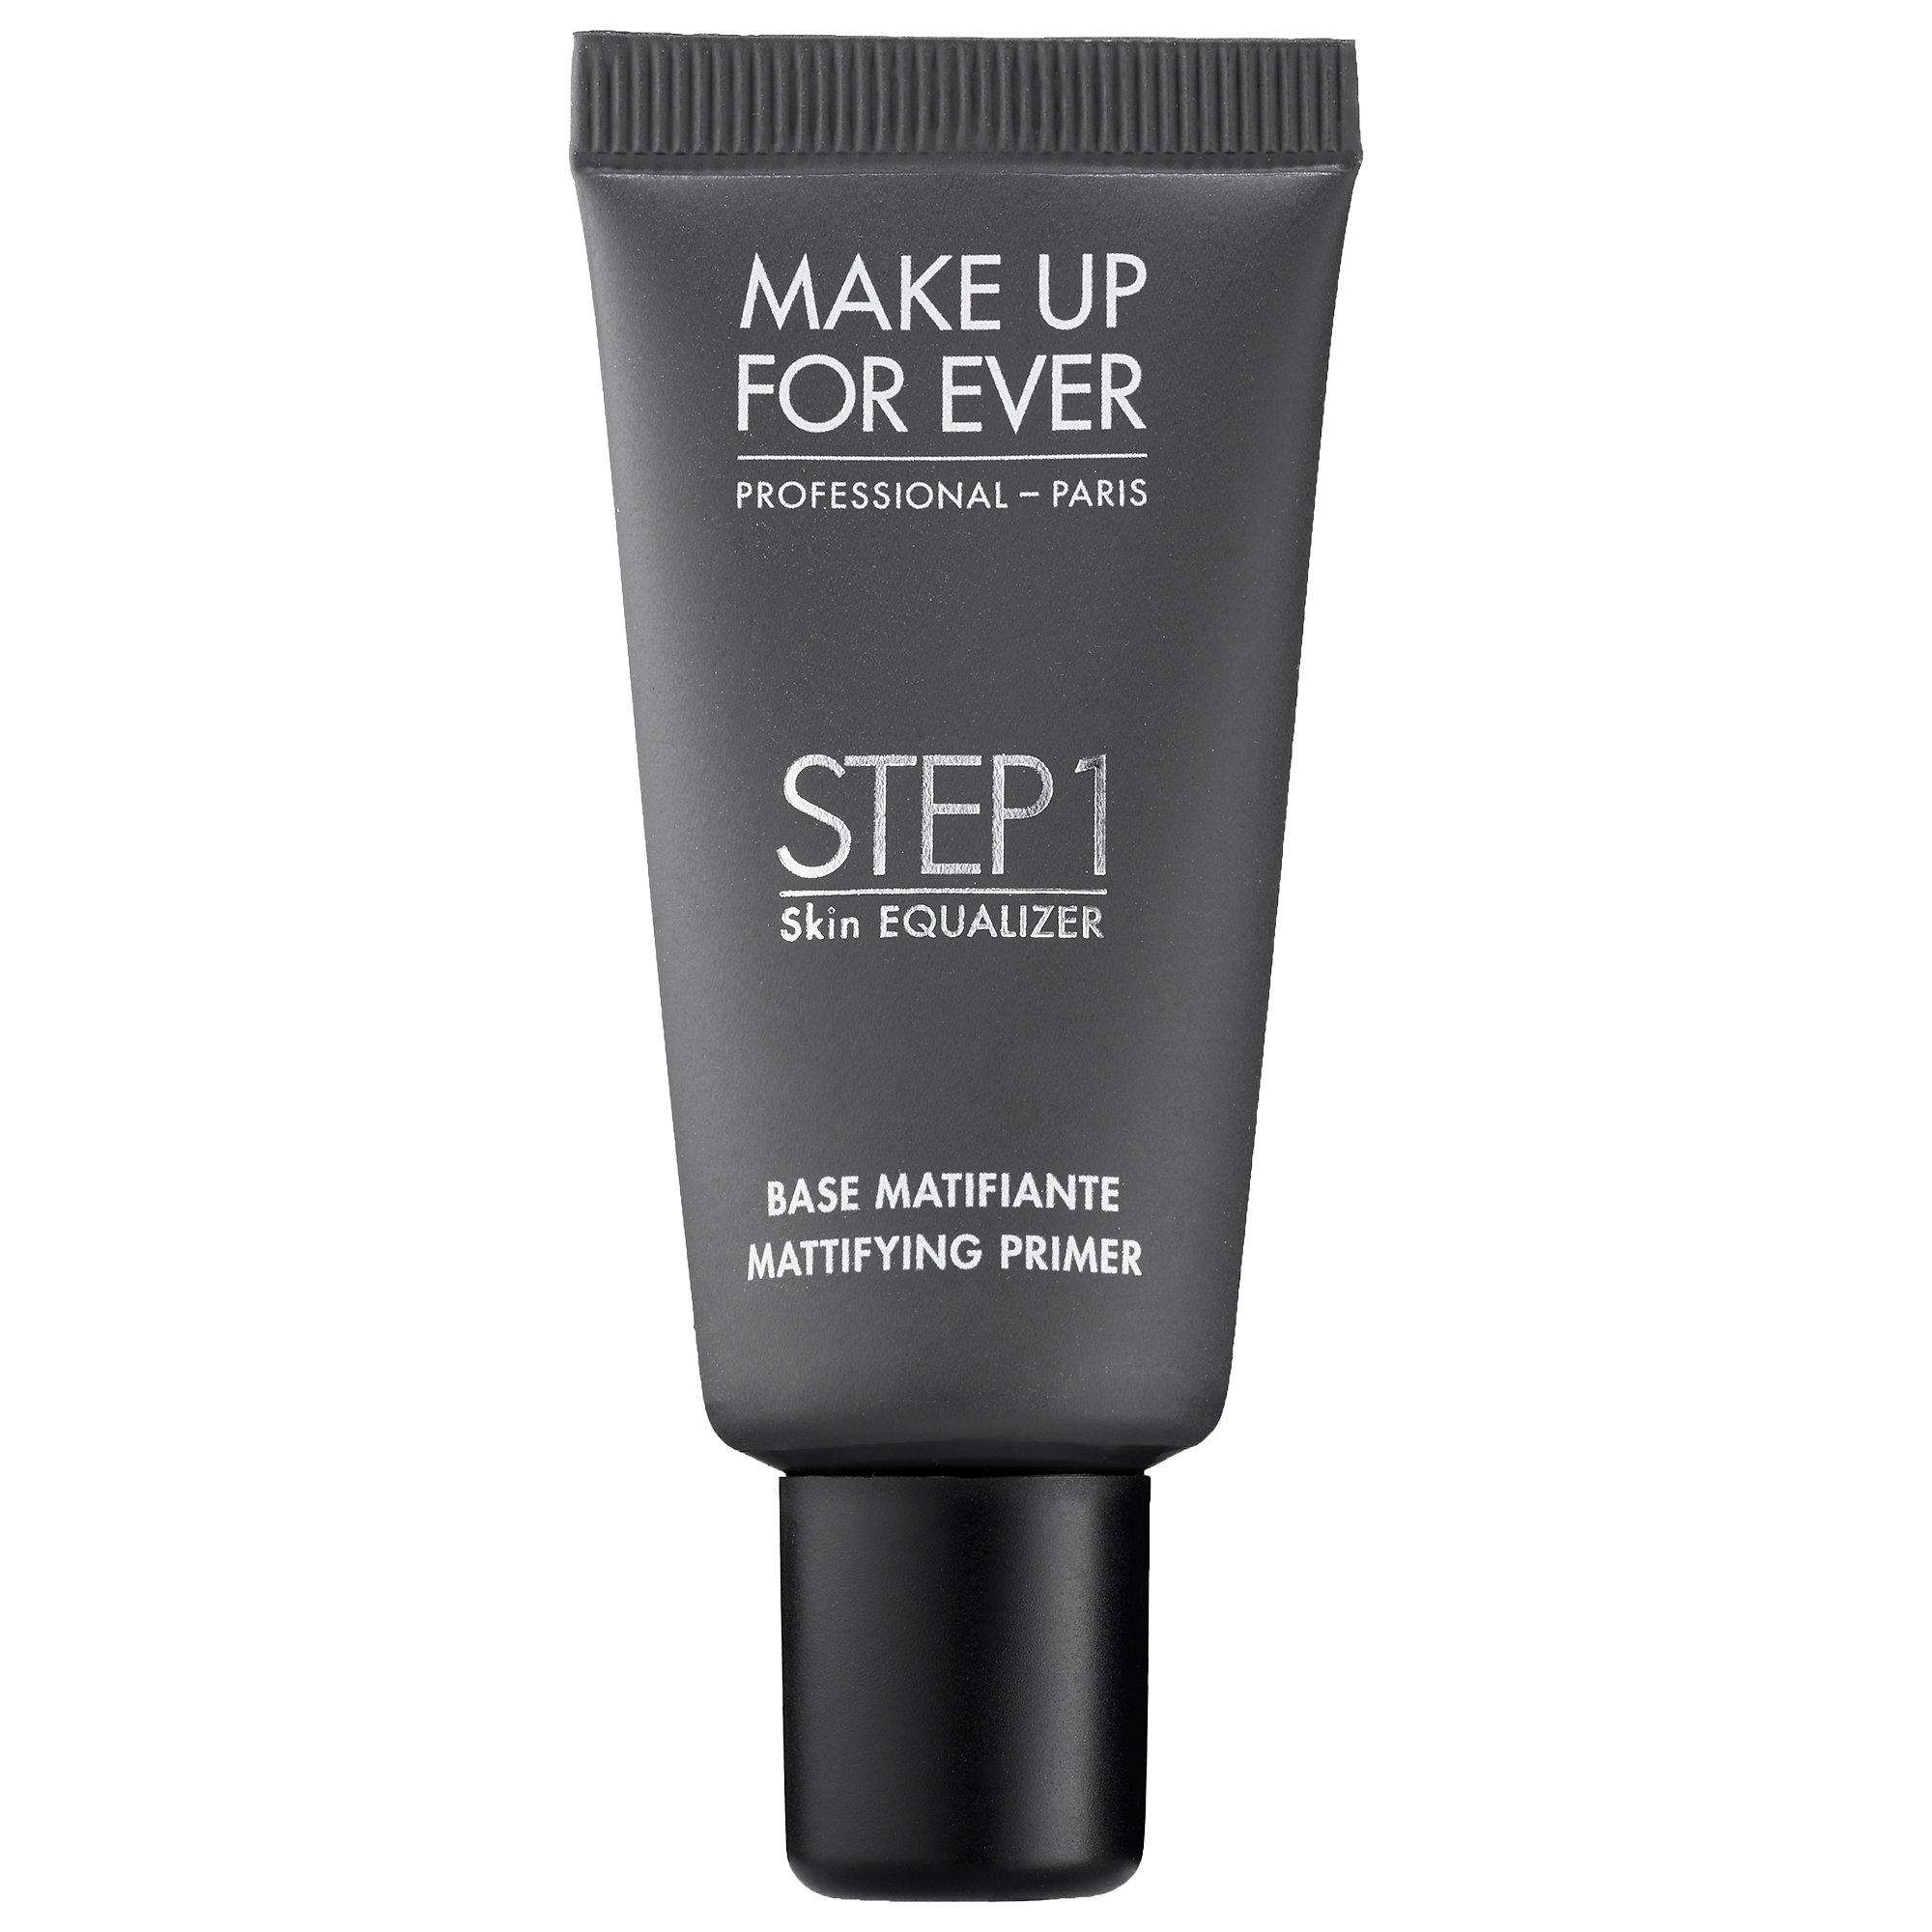 Makeup Forever Step 1 Skin Equalizer Mattifying Primer Travel Size 15ml